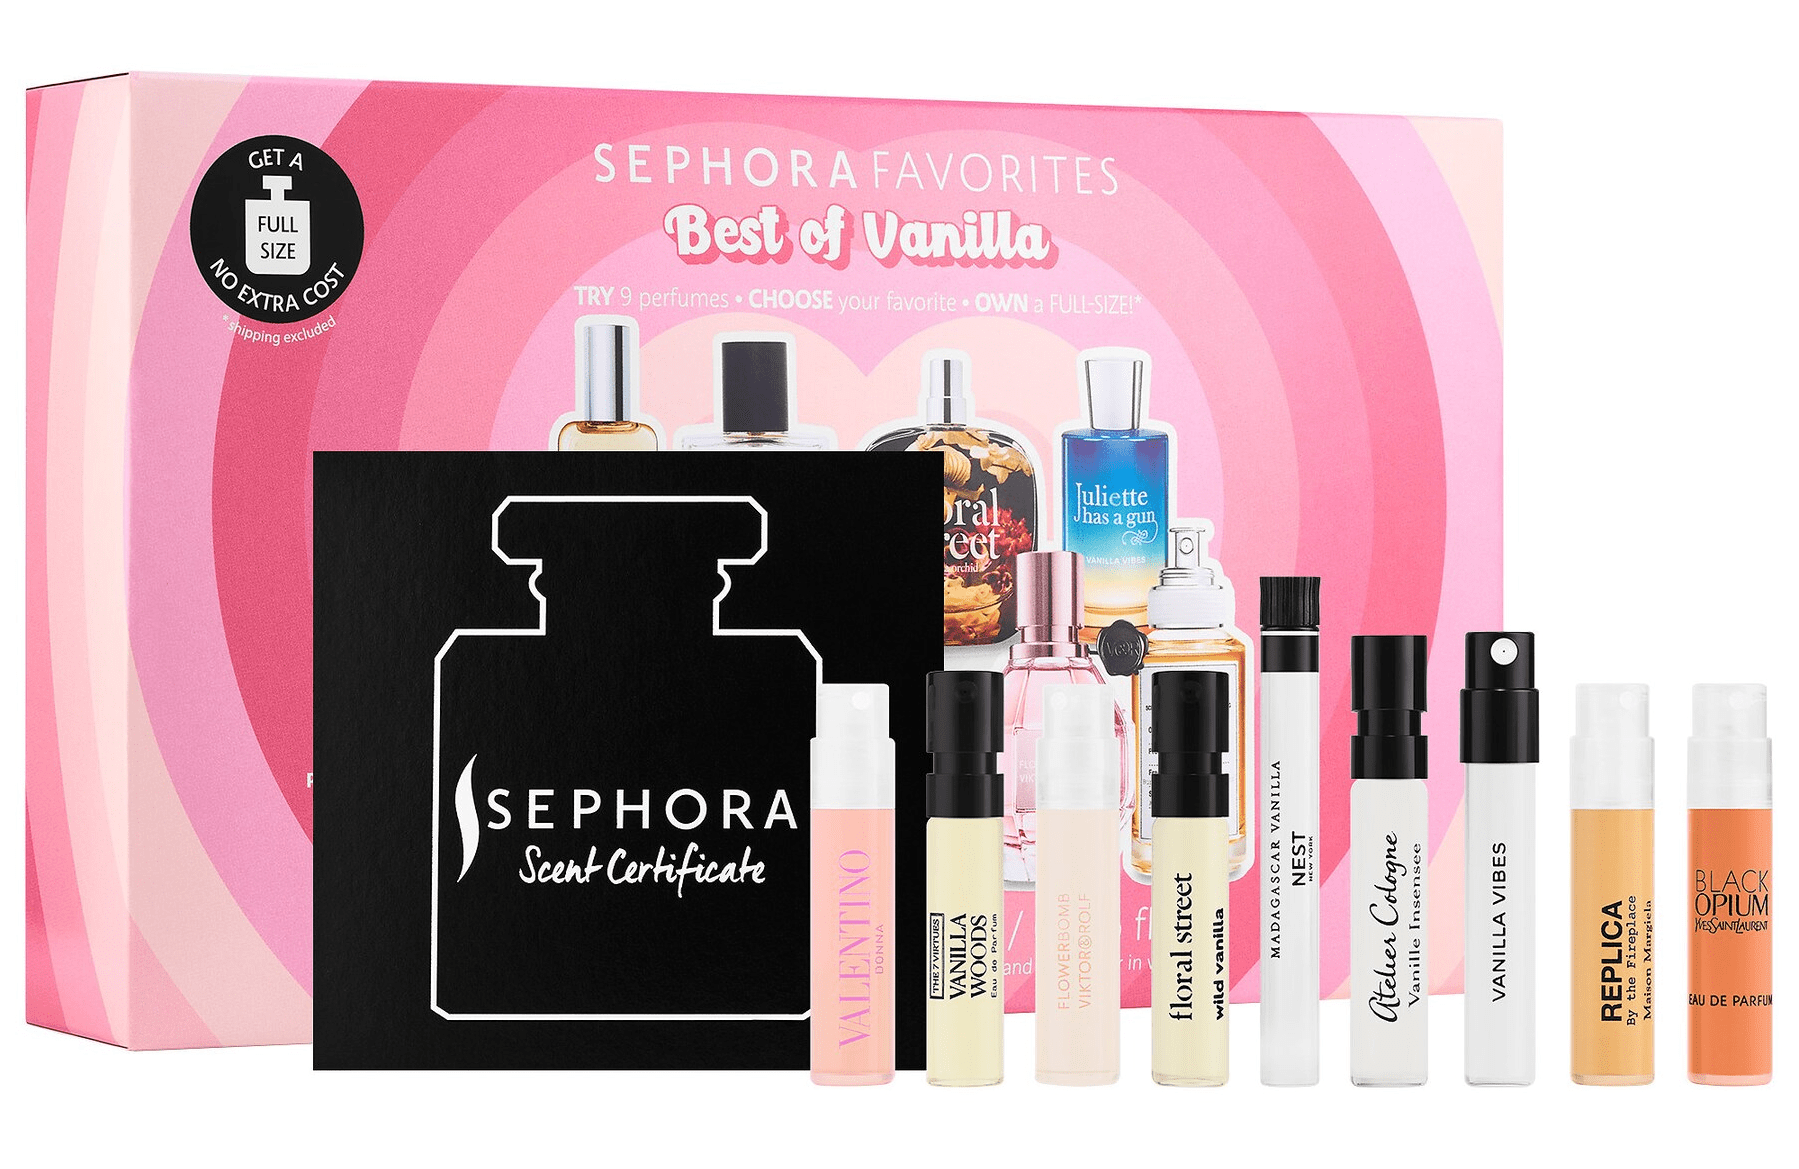 Sephora Favorites Perfume Sampler Set - Sephora Favorites